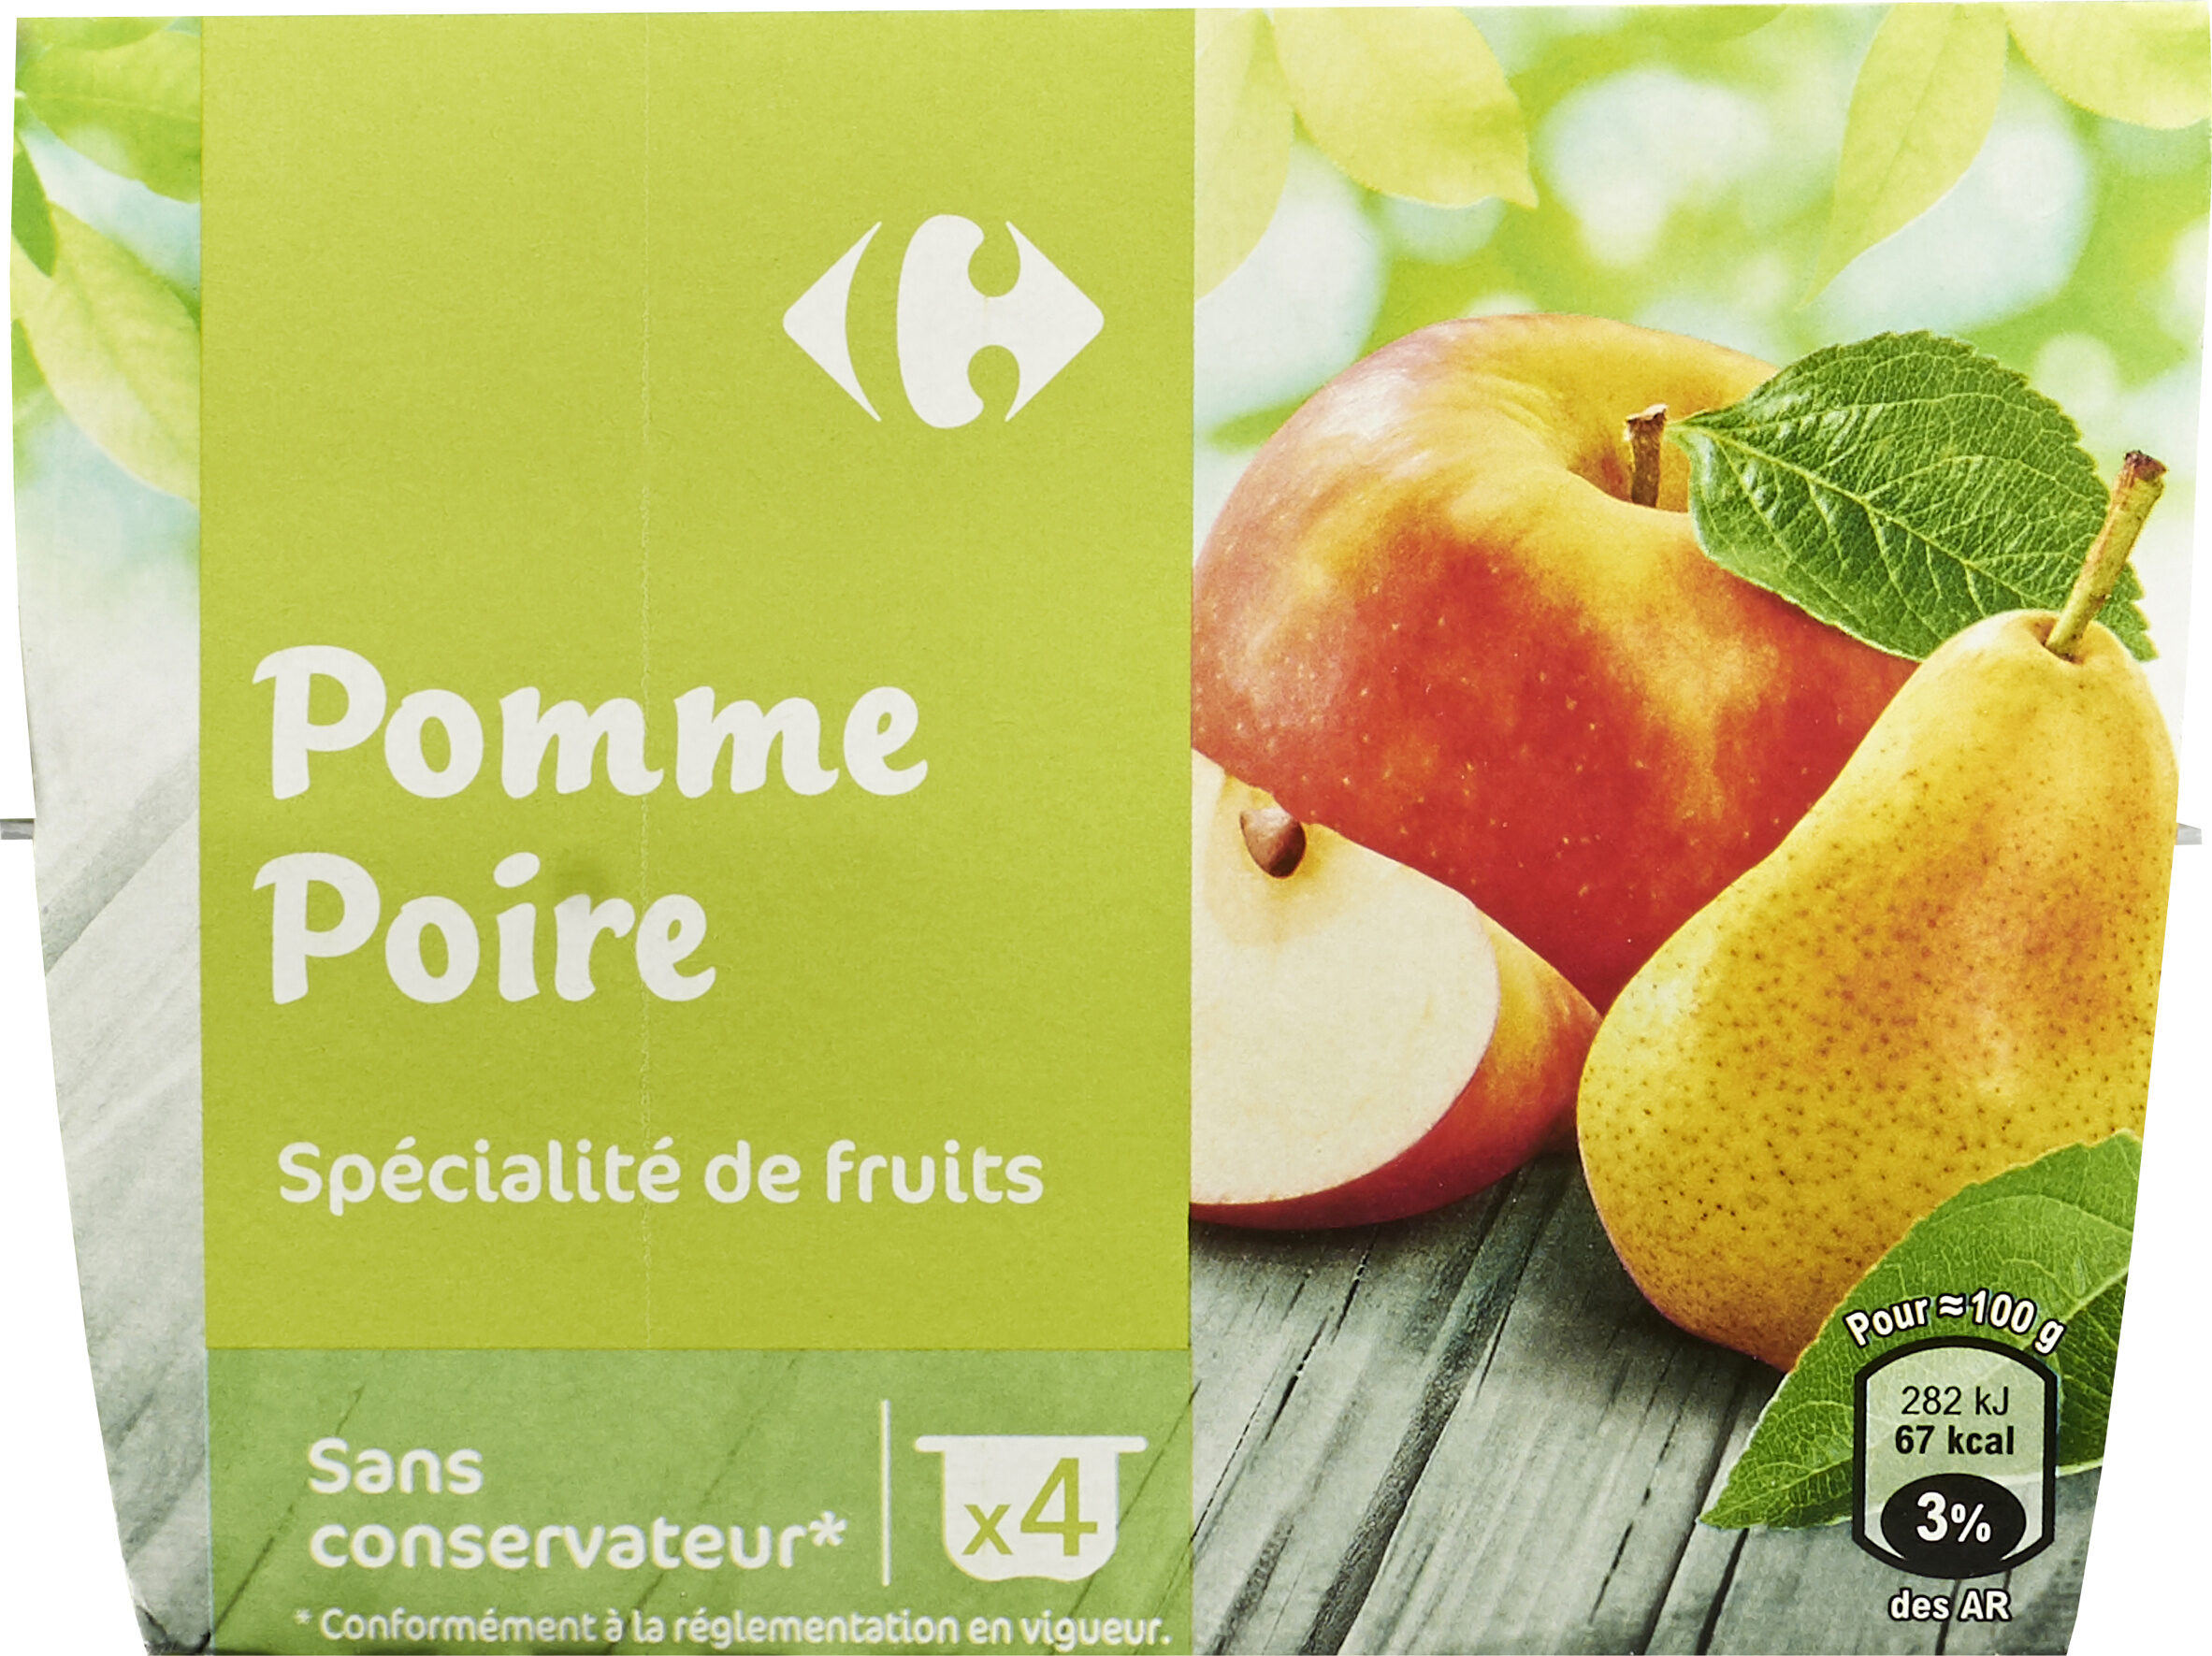 Pomme Poire - Product - fr